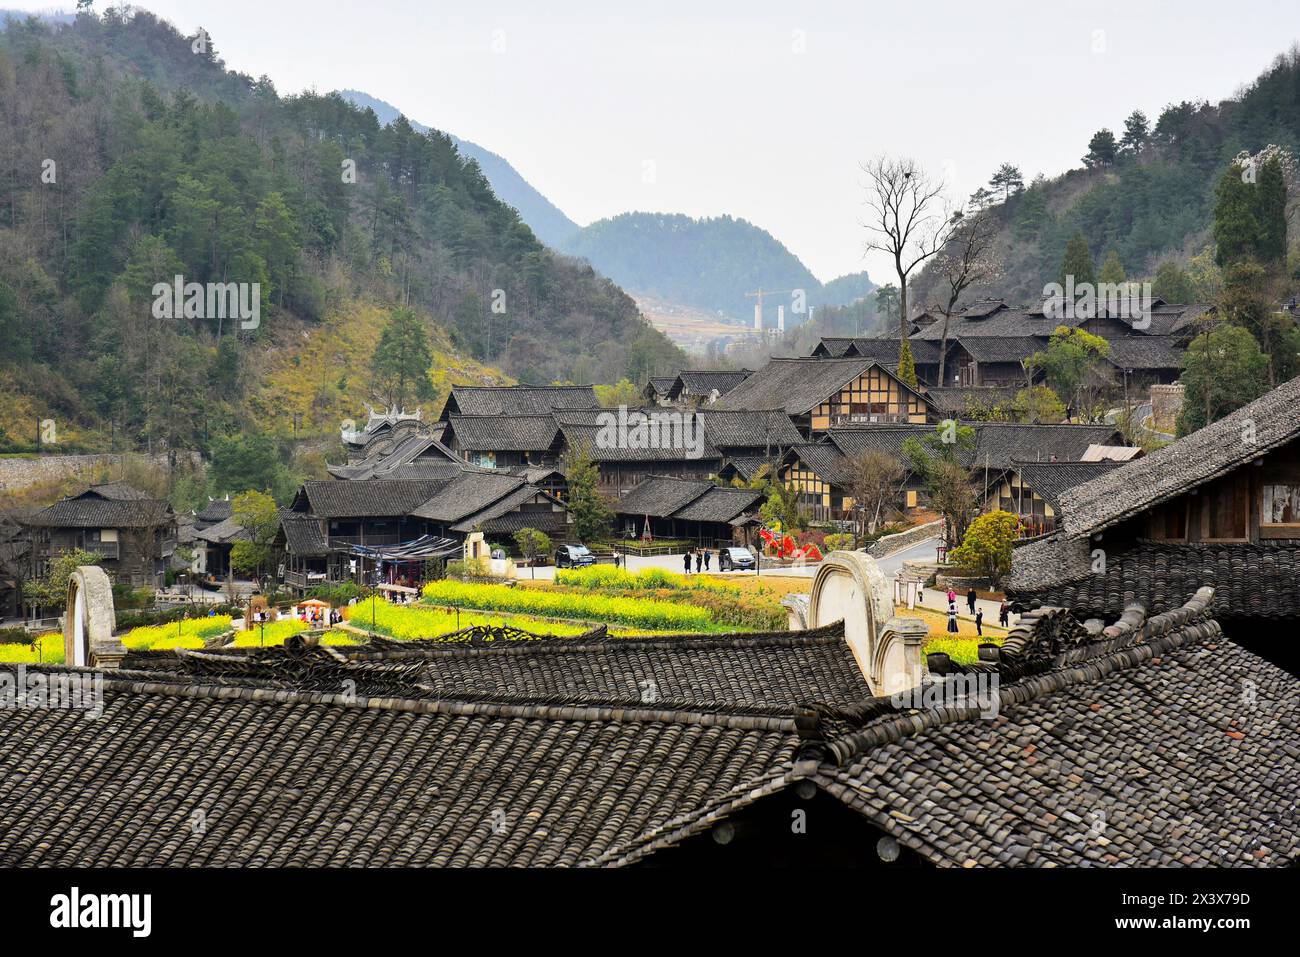 Le beau village de Wujiang du groupe ethnique minoritaire Miao avec de beaux champs de fleurs de colza, ville de Zunyi, province du Guizhou, Chine Banque D'Images